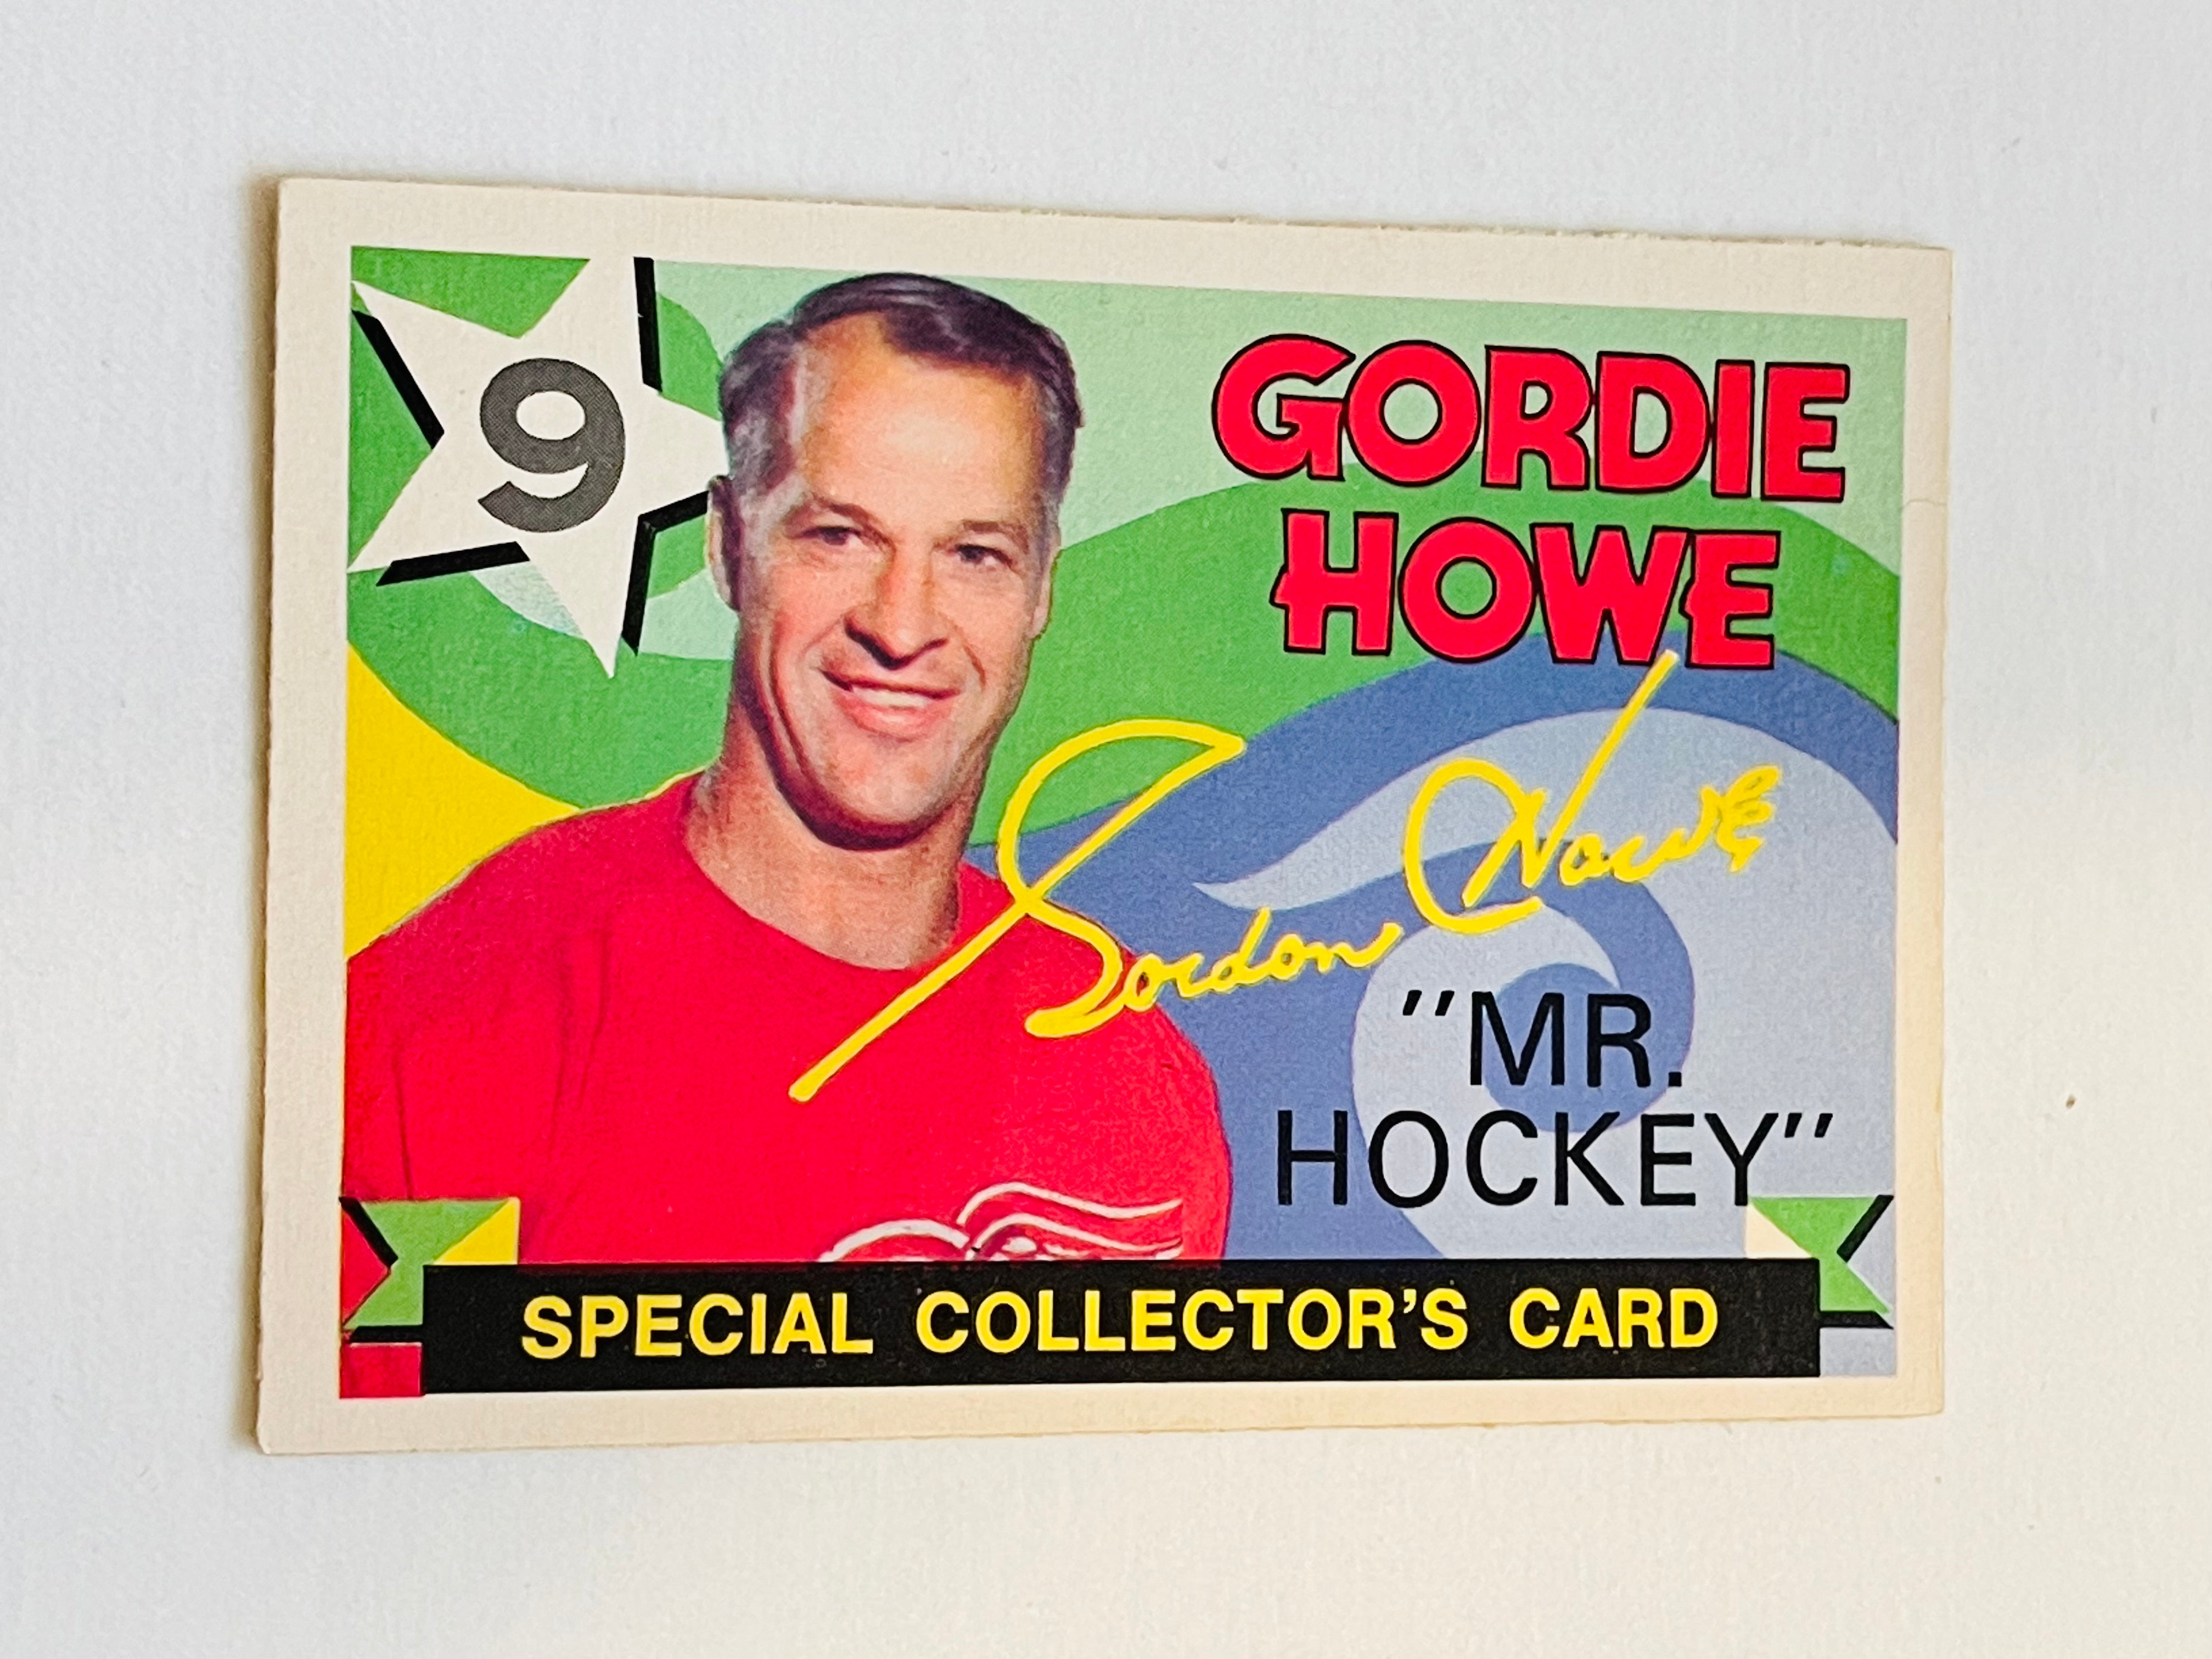 Gordie Howe Mr. Hockey opc card 1970